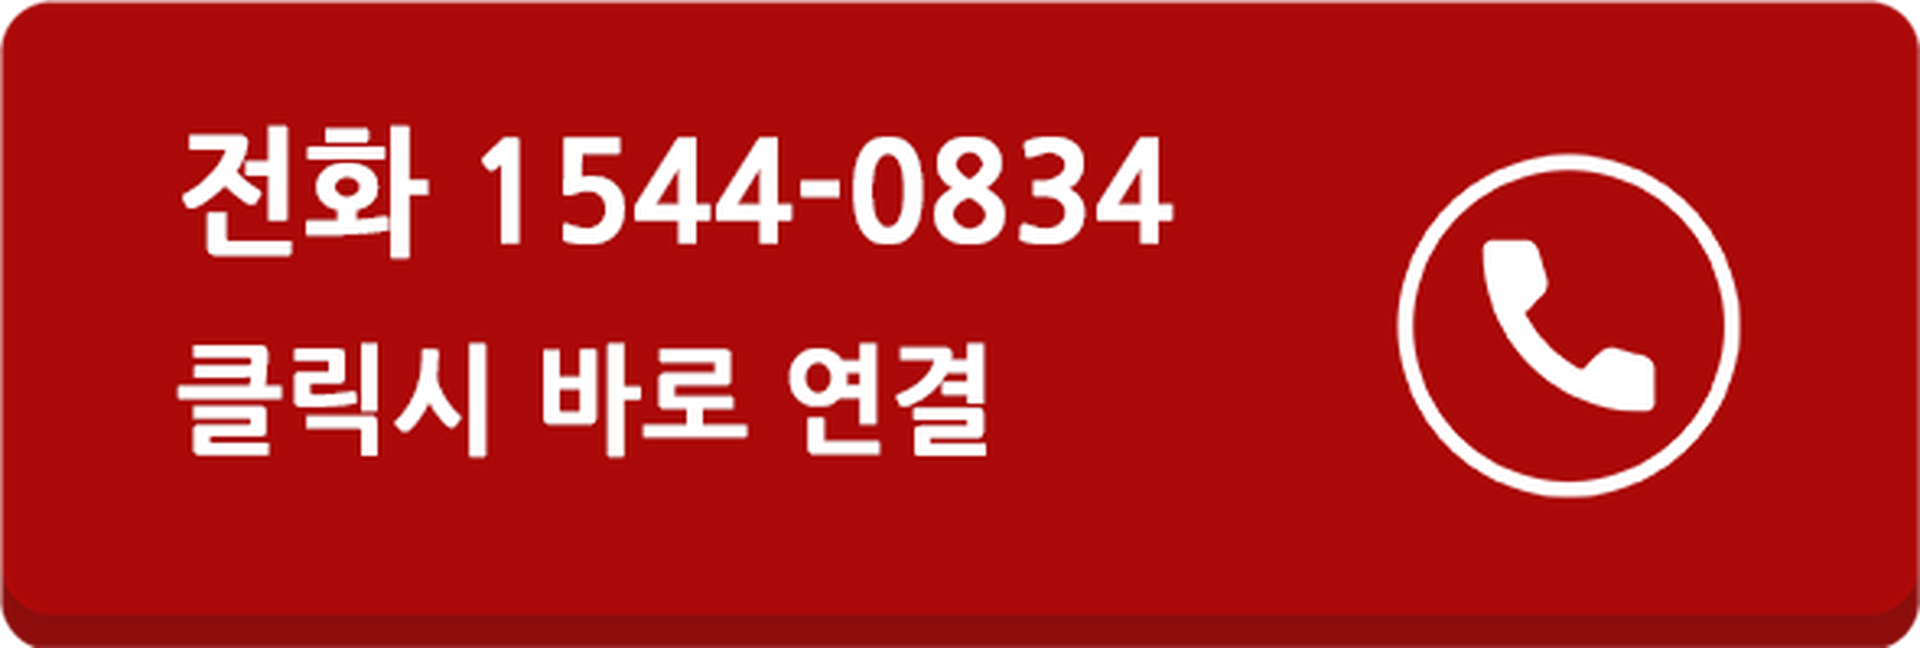 동탄 삼정그린코아 문의전화